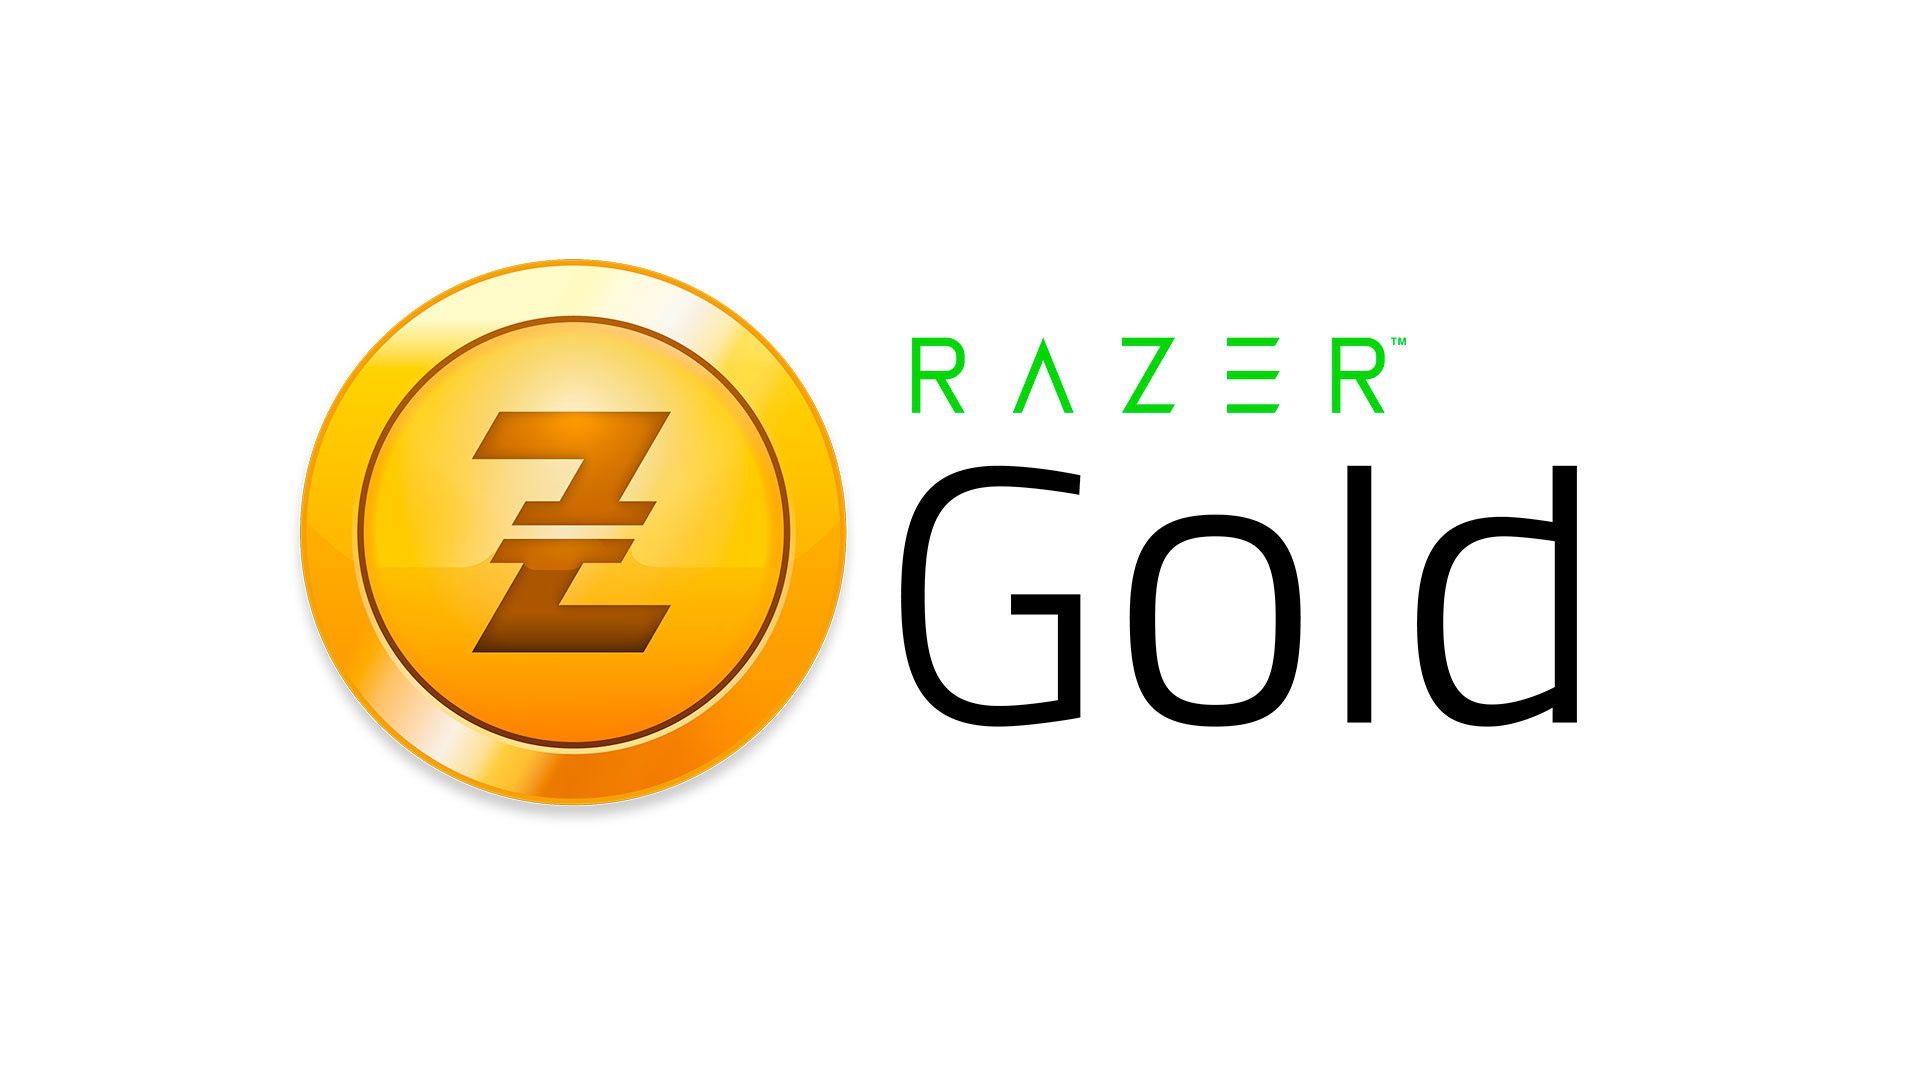 Razer Gold, единый виртуальный кредит Razer, теперь доступен в Бразилии